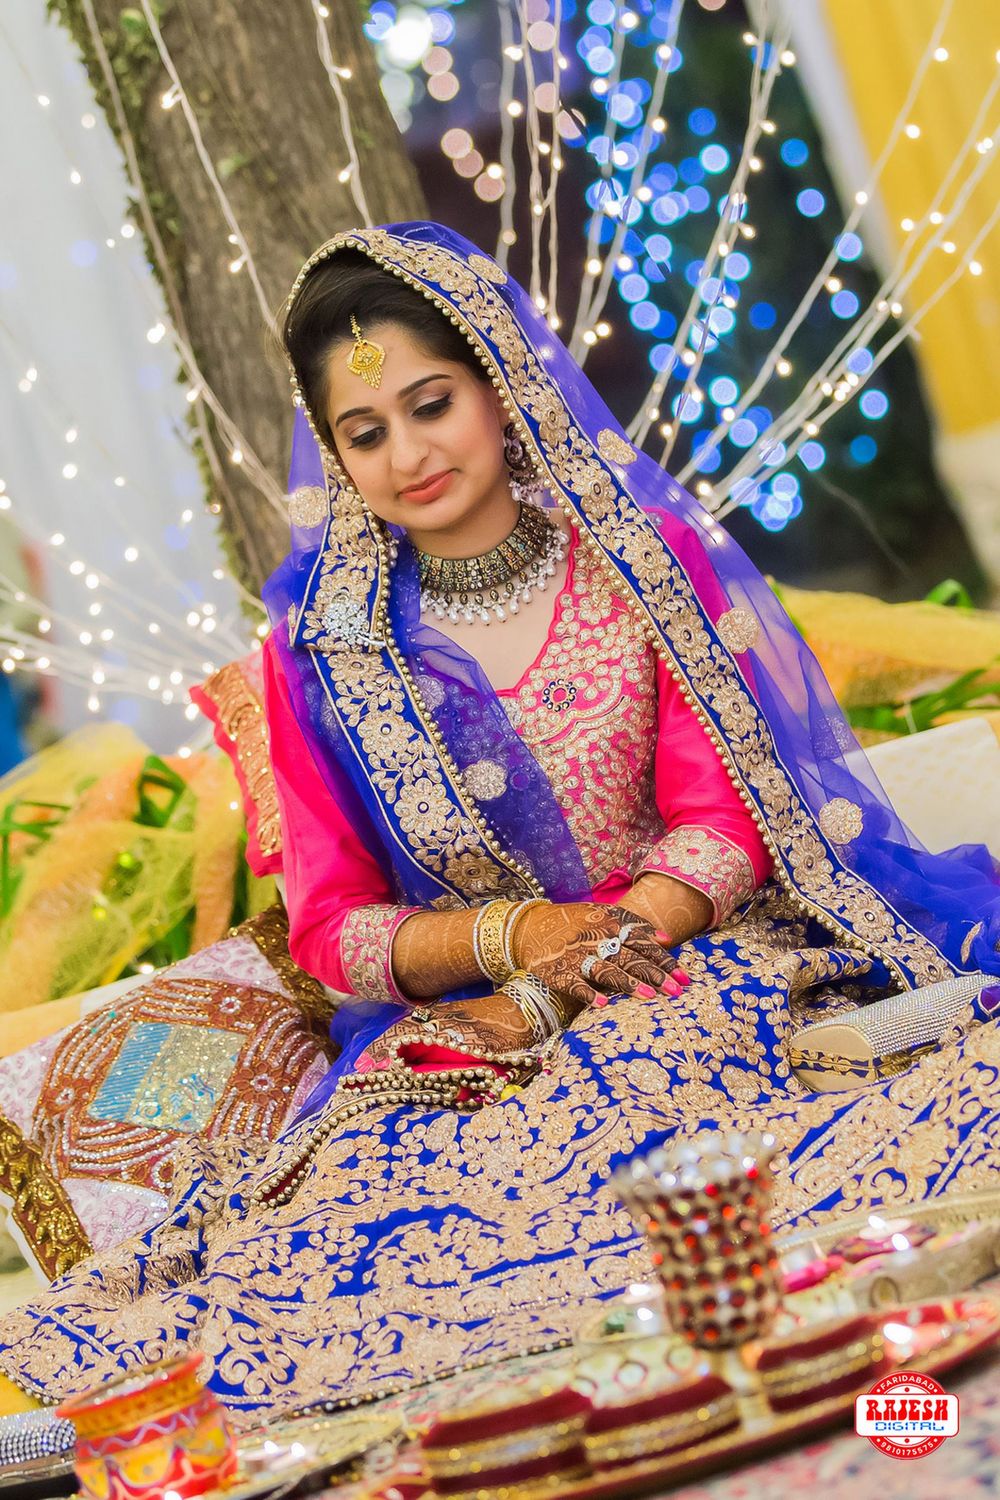 Photo From Srinagar Wedding - By Rajesh Digital